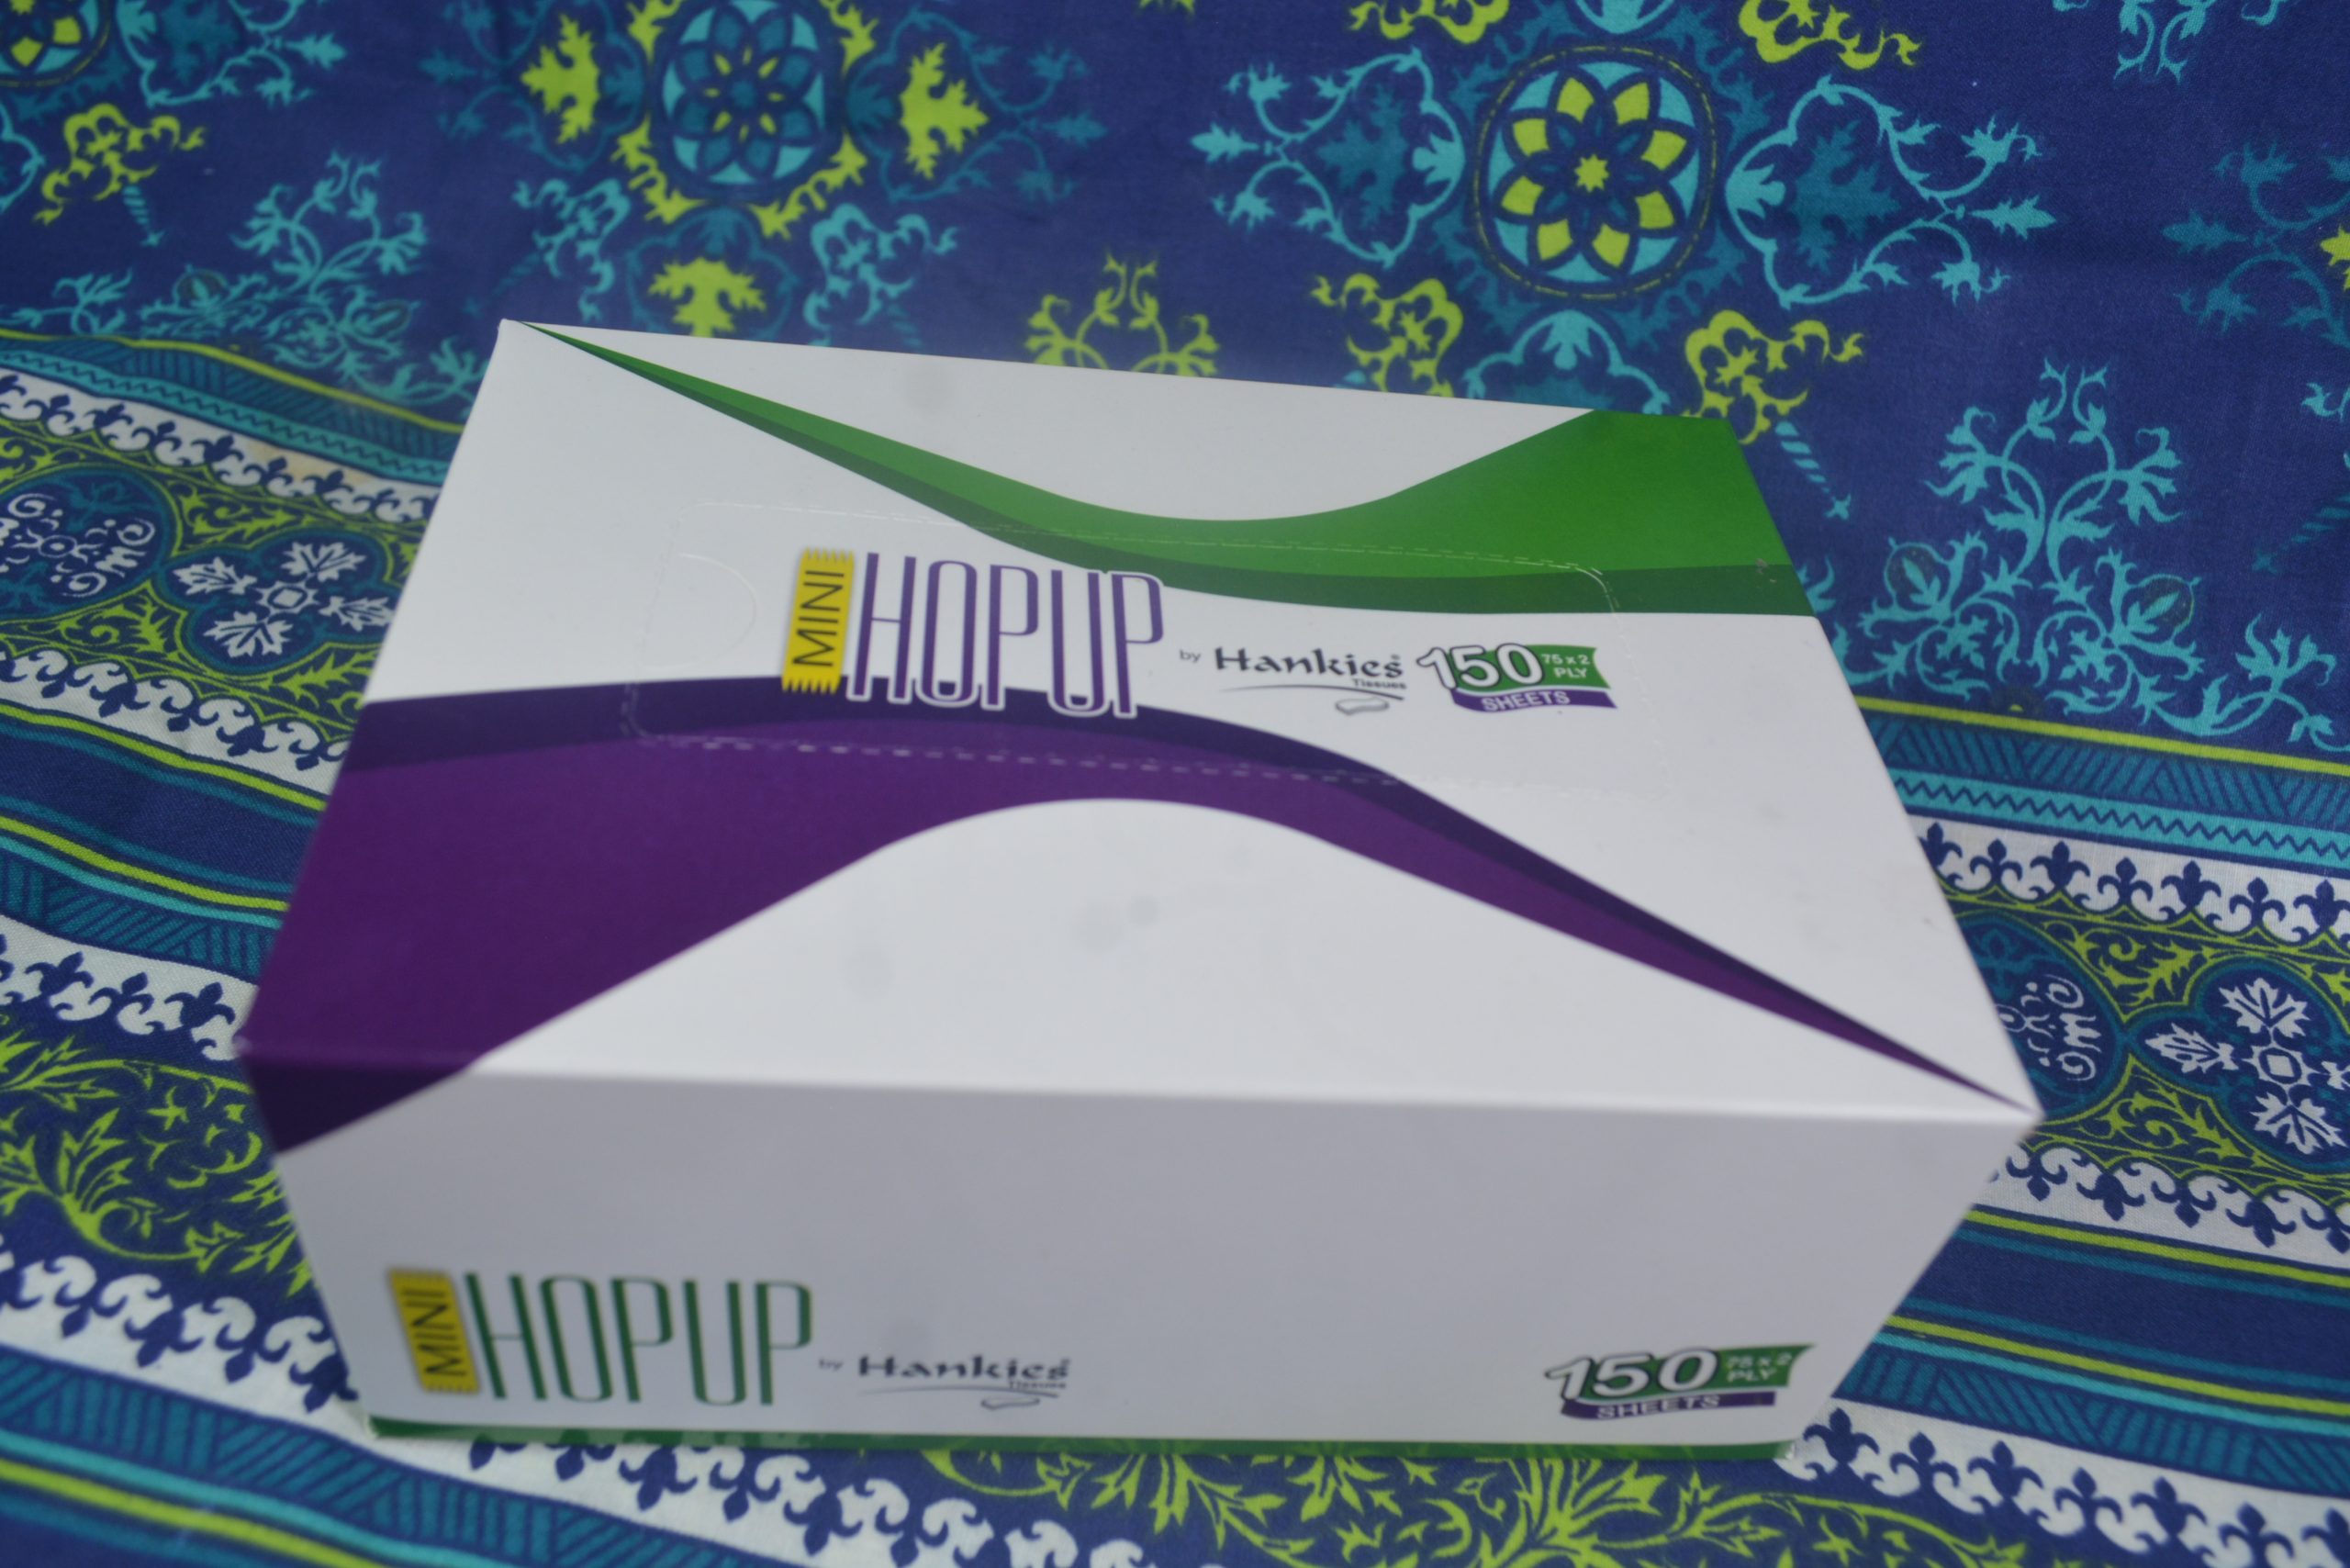 hop up mini tissue box (4)